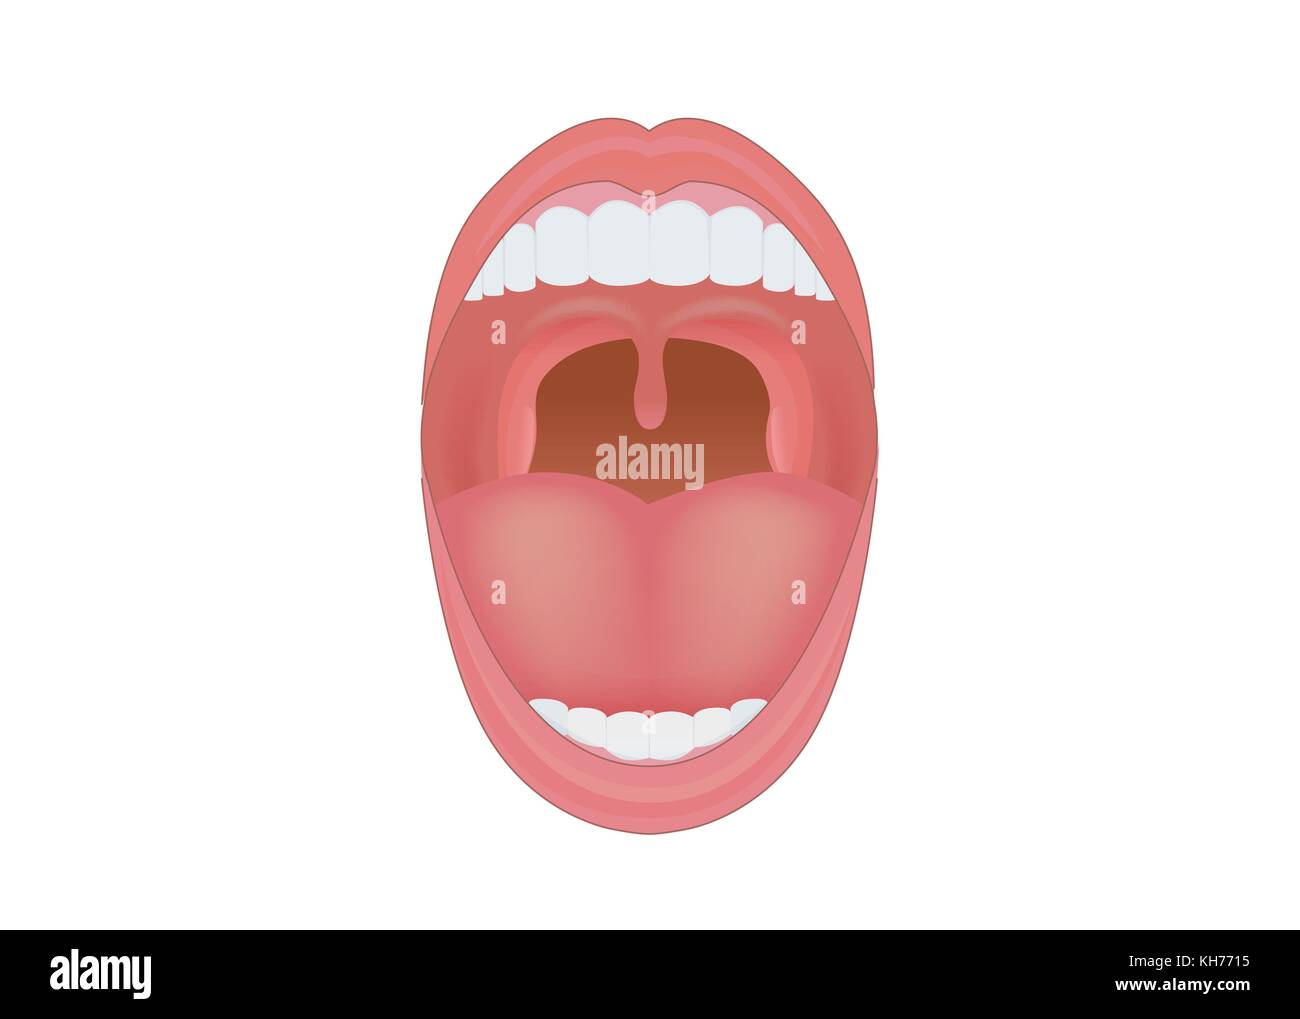 Les droits de la bouche ouverte pour montrer les dents, les gencives et la langue à l'intérieur. Illustration de Vecteur